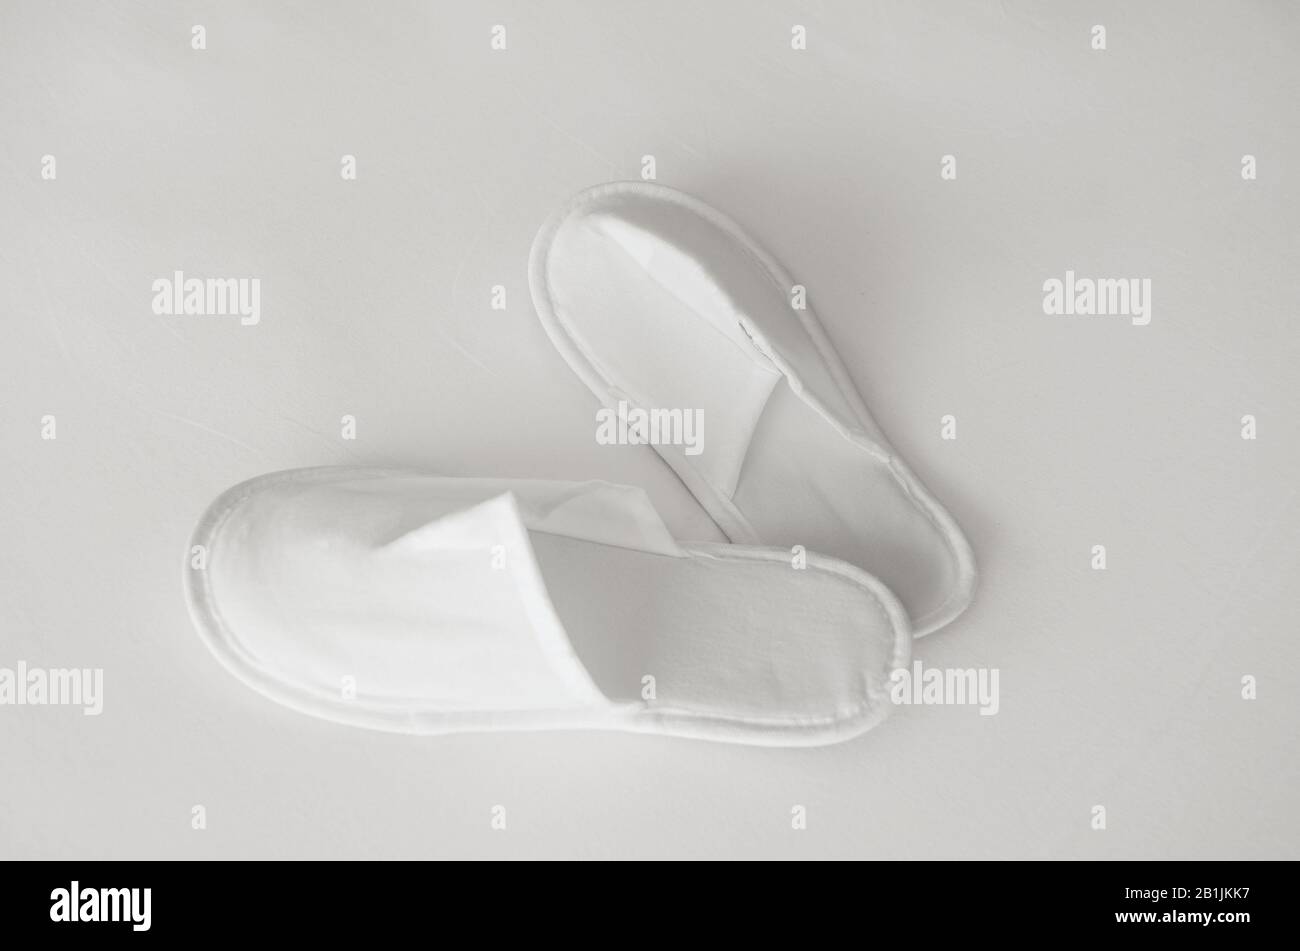 Les nouveaux chaussons jetables en tissu écologique fournis dans un emballage transparent se trouvent sur un drap blanc Banque D'Images